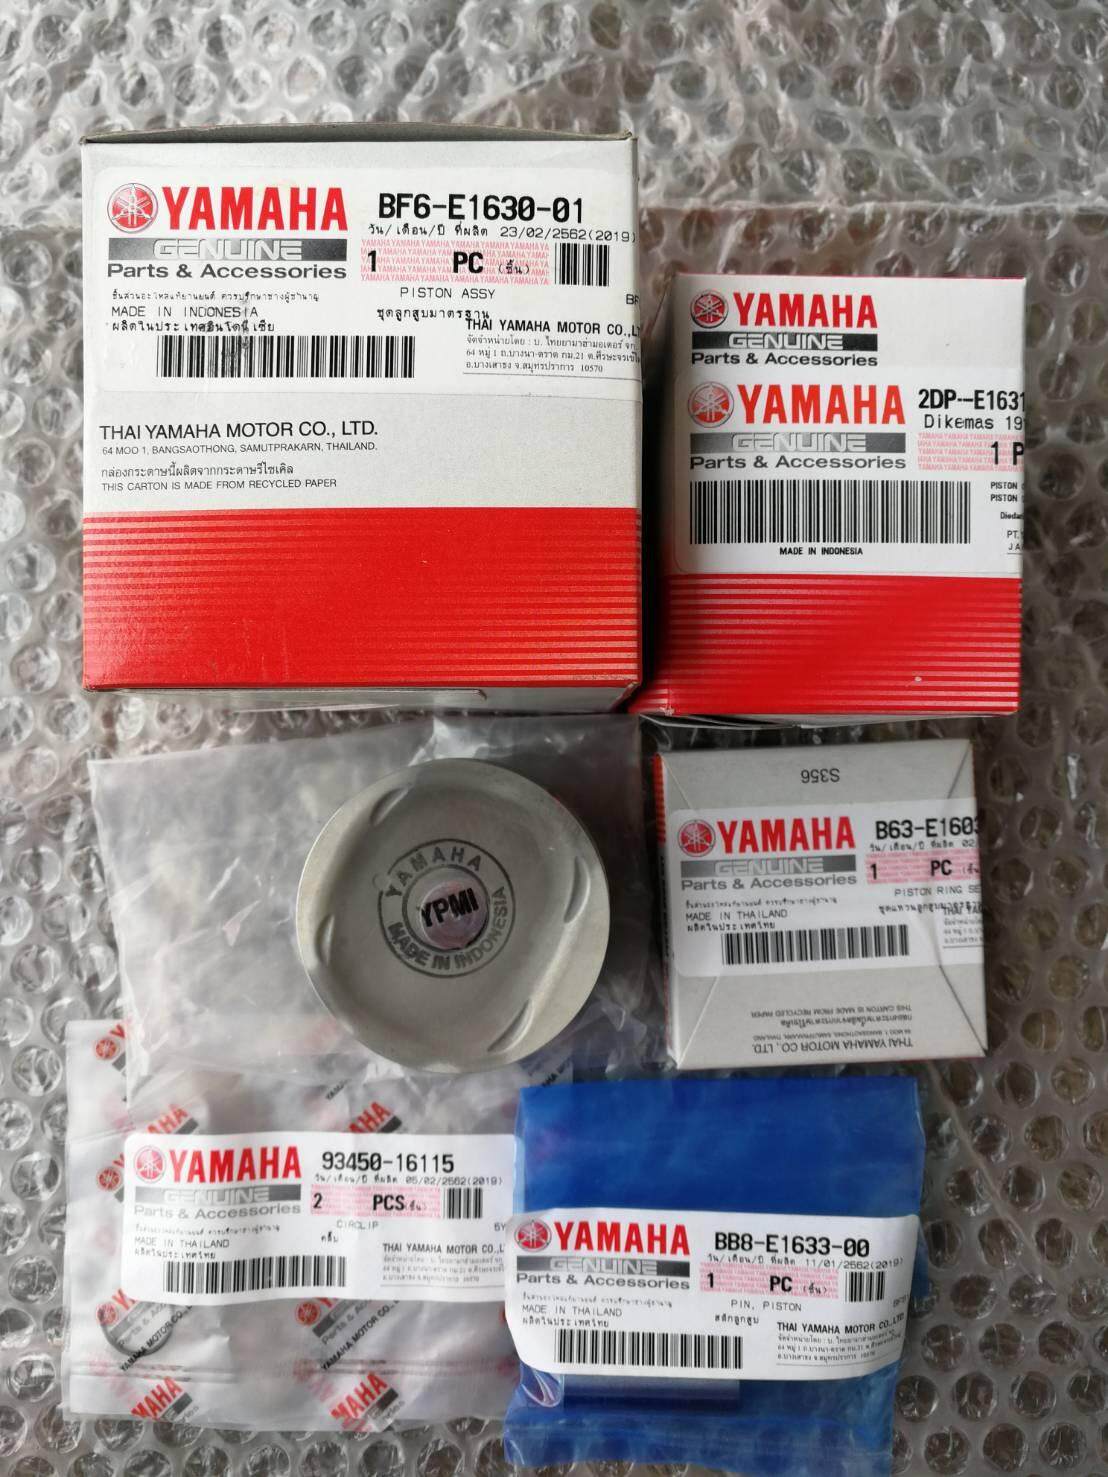 ลูกสูบแท้ ยามาฮ่า Yamaha N-Max 1 ชุด (BF6-E1630-01)